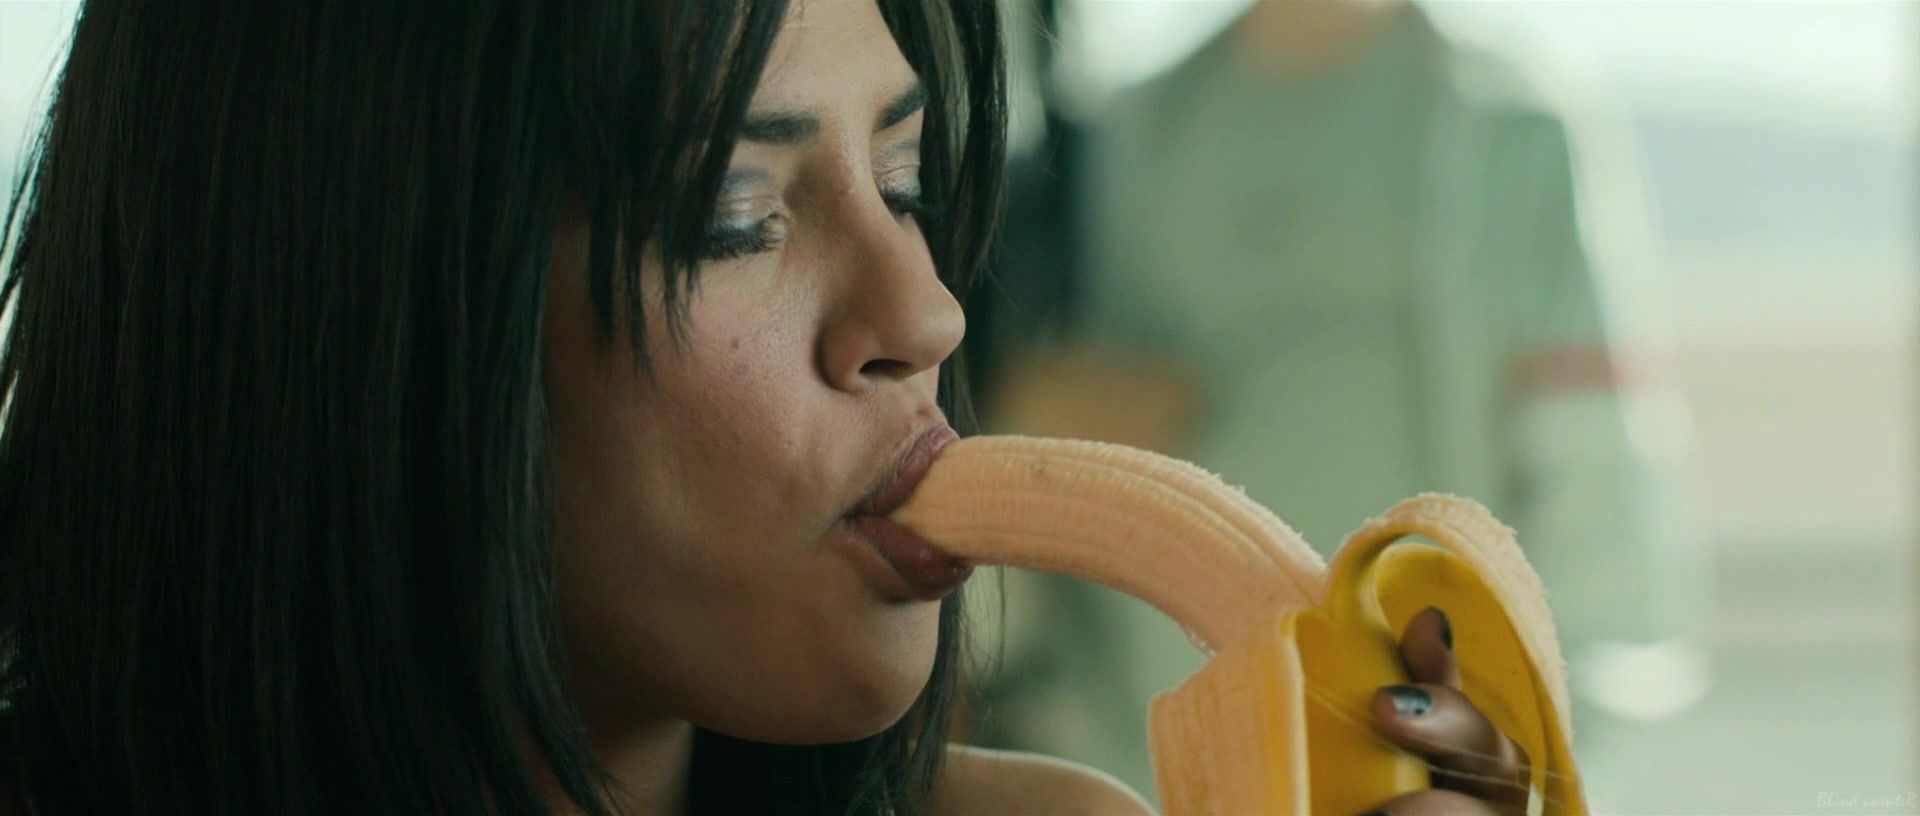 Hot Whores Jessica Szohr hot - Love Bite (2012) Naked Sex - 1